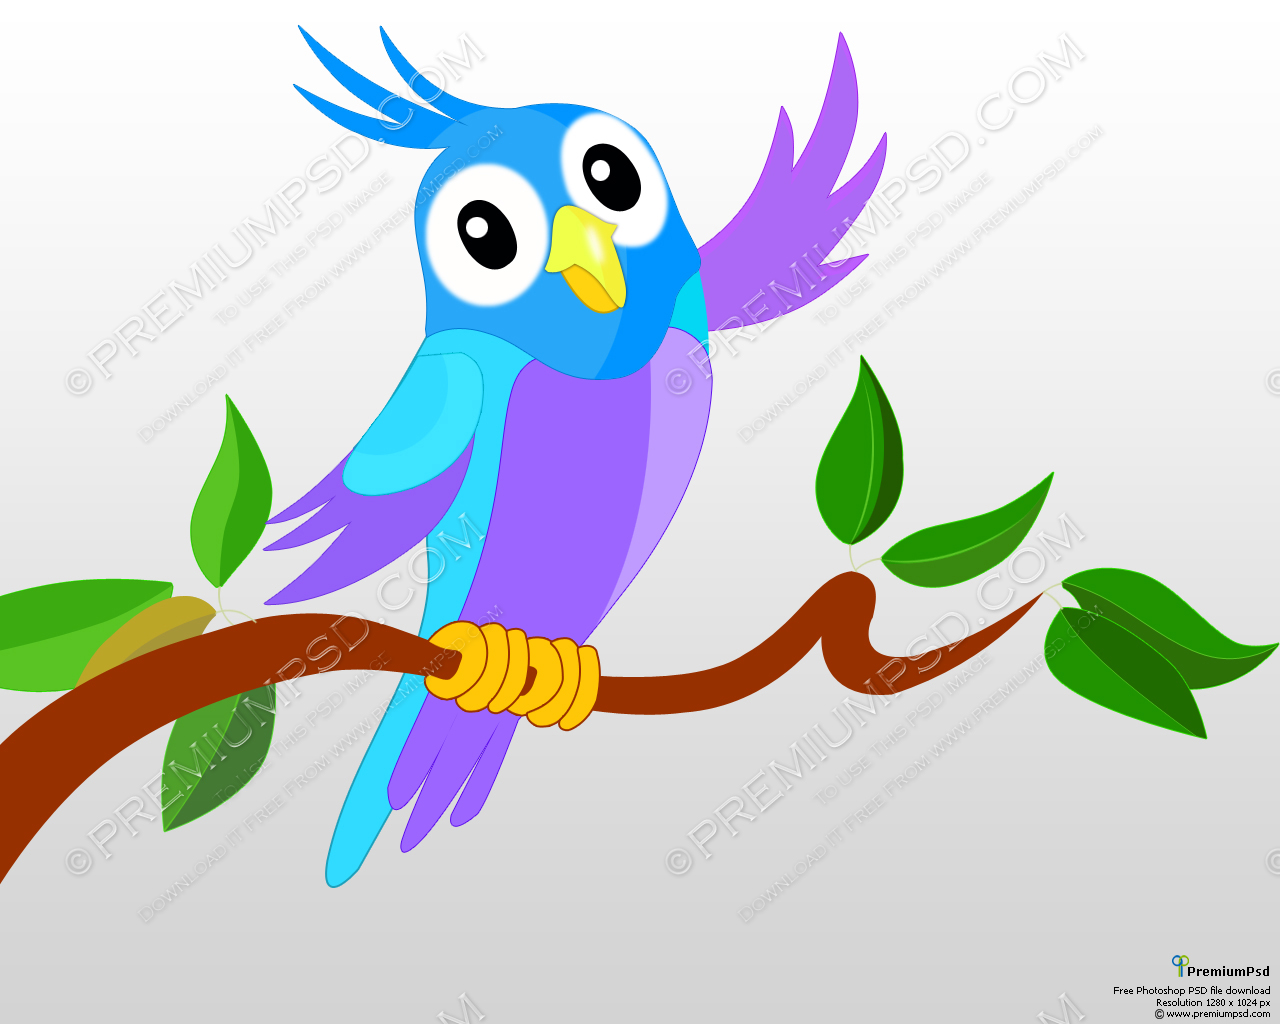 Cute Cartoon Parrot Full   Free Images At Clker Com   Vector Clip Art    